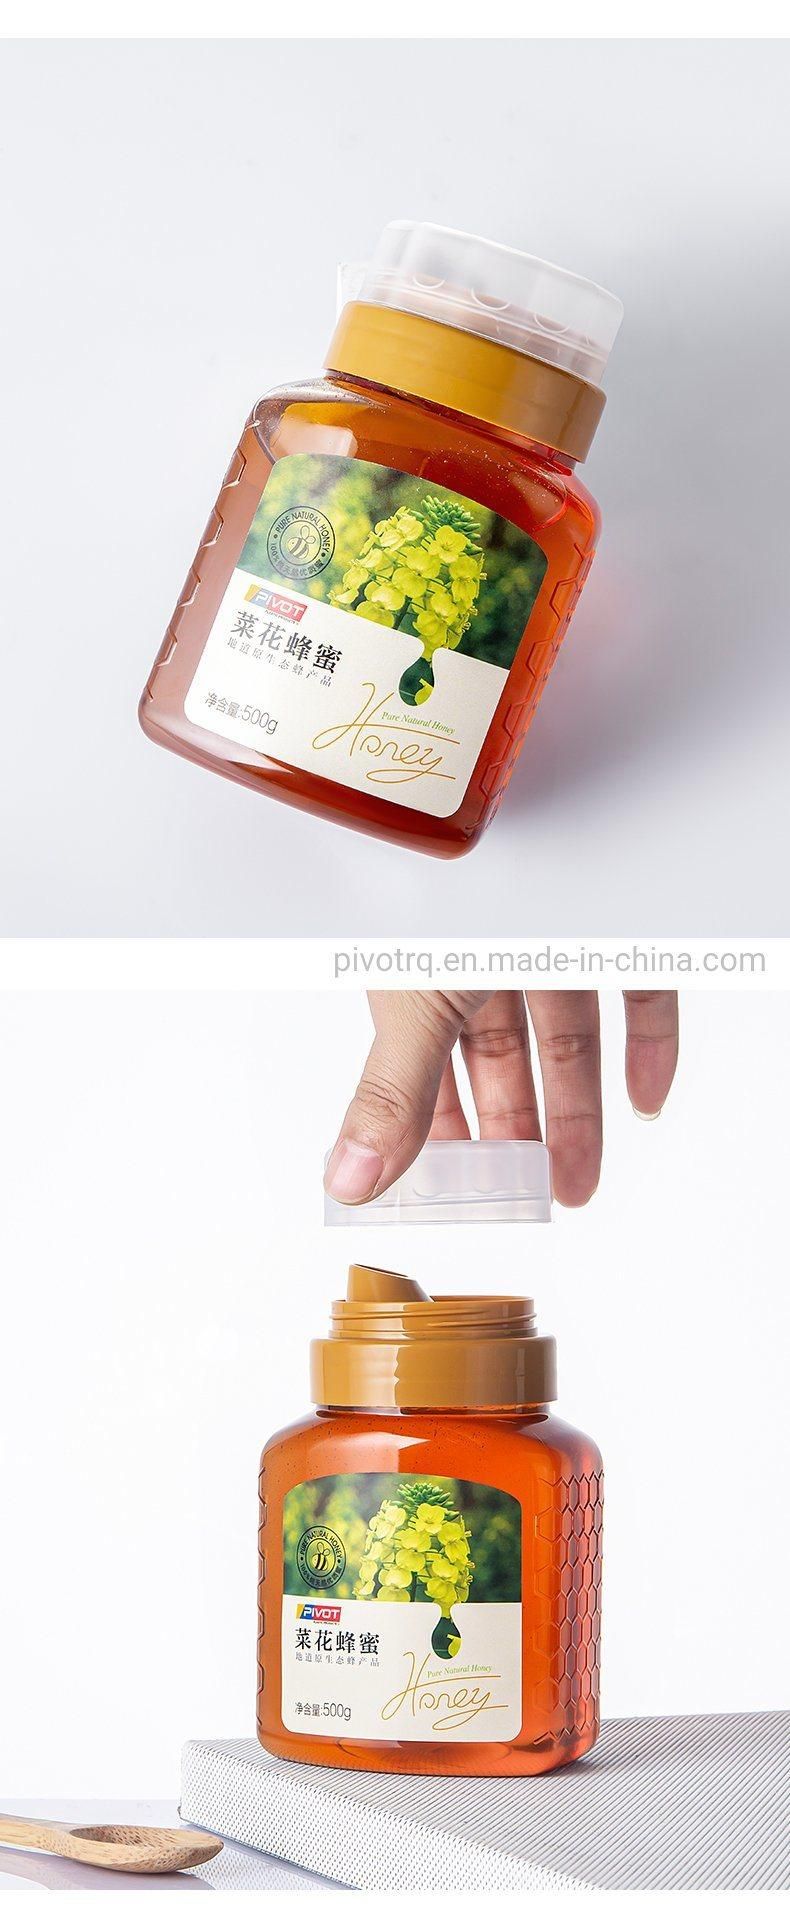 500g Pet Food Grade Plastic Honey Bottle with Reflux Inlet Design Cap